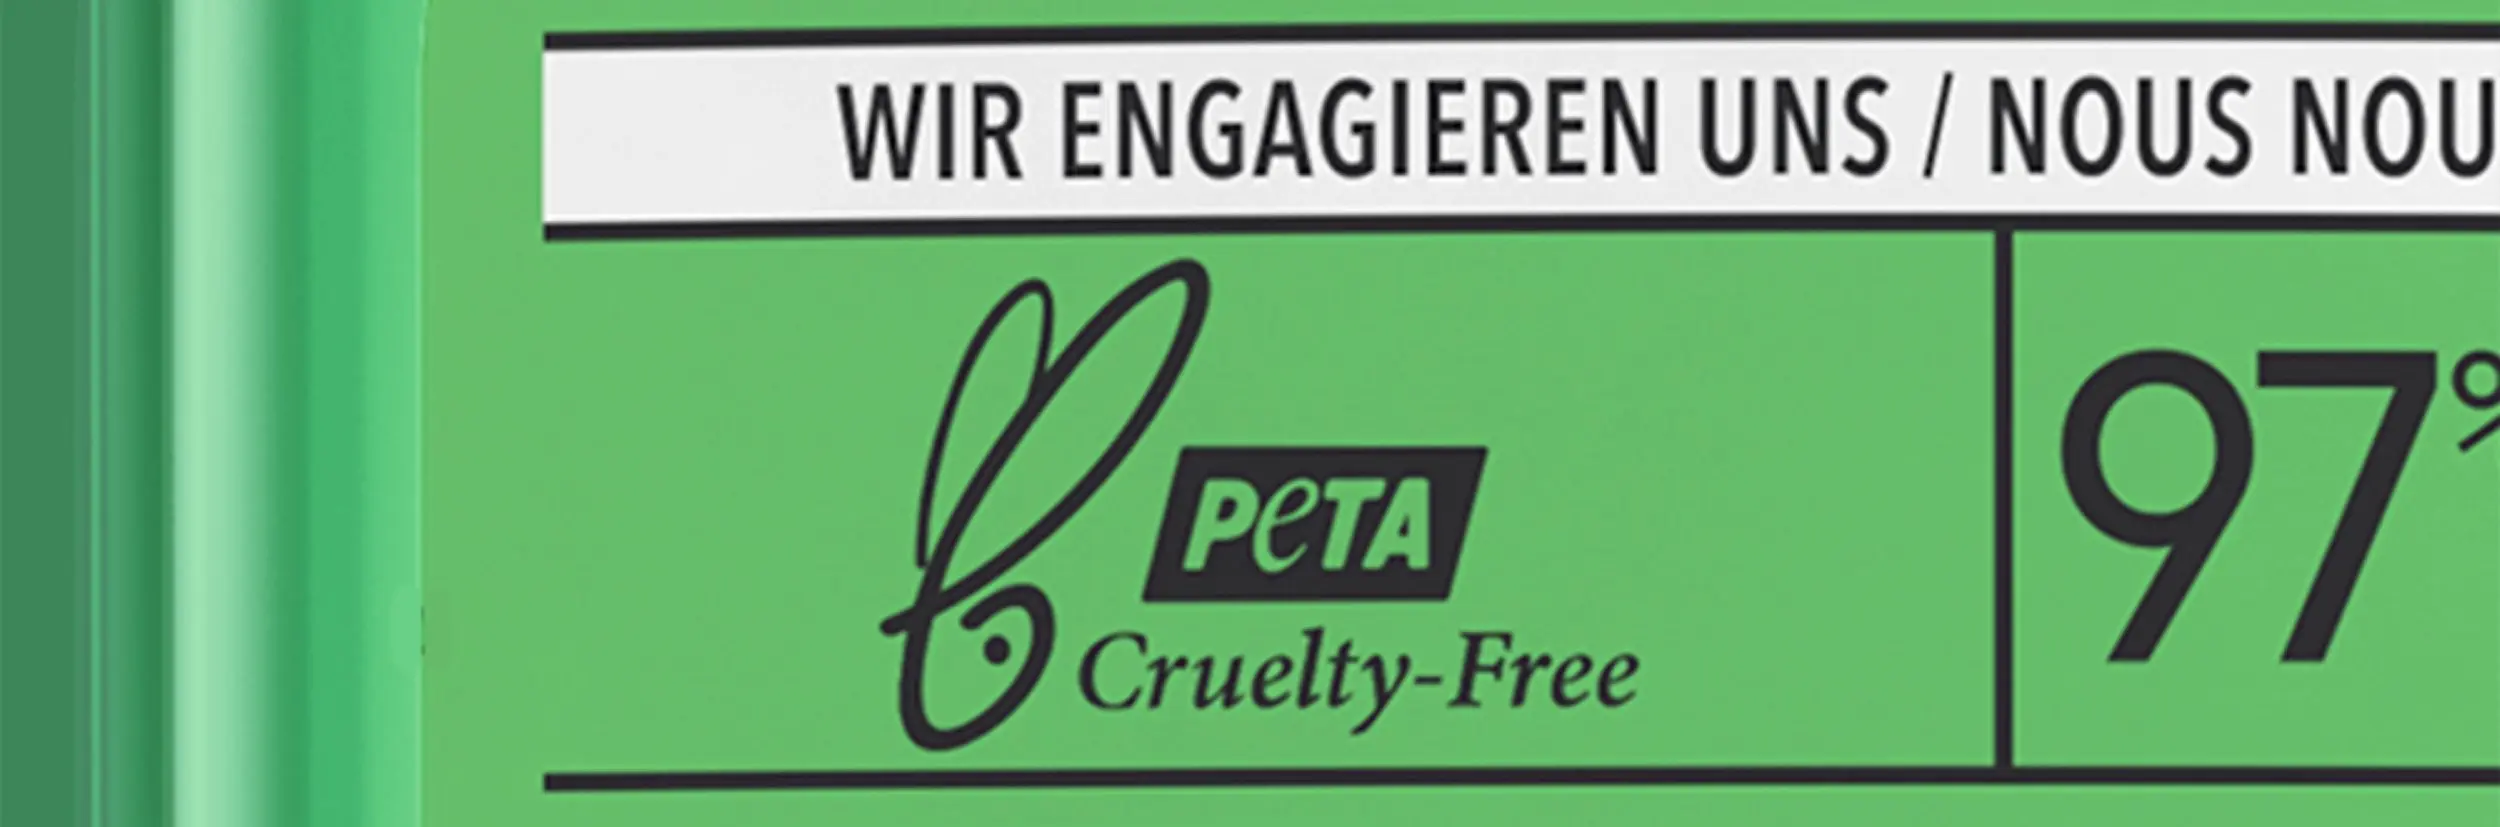 P&G Animal Welfare Achievements